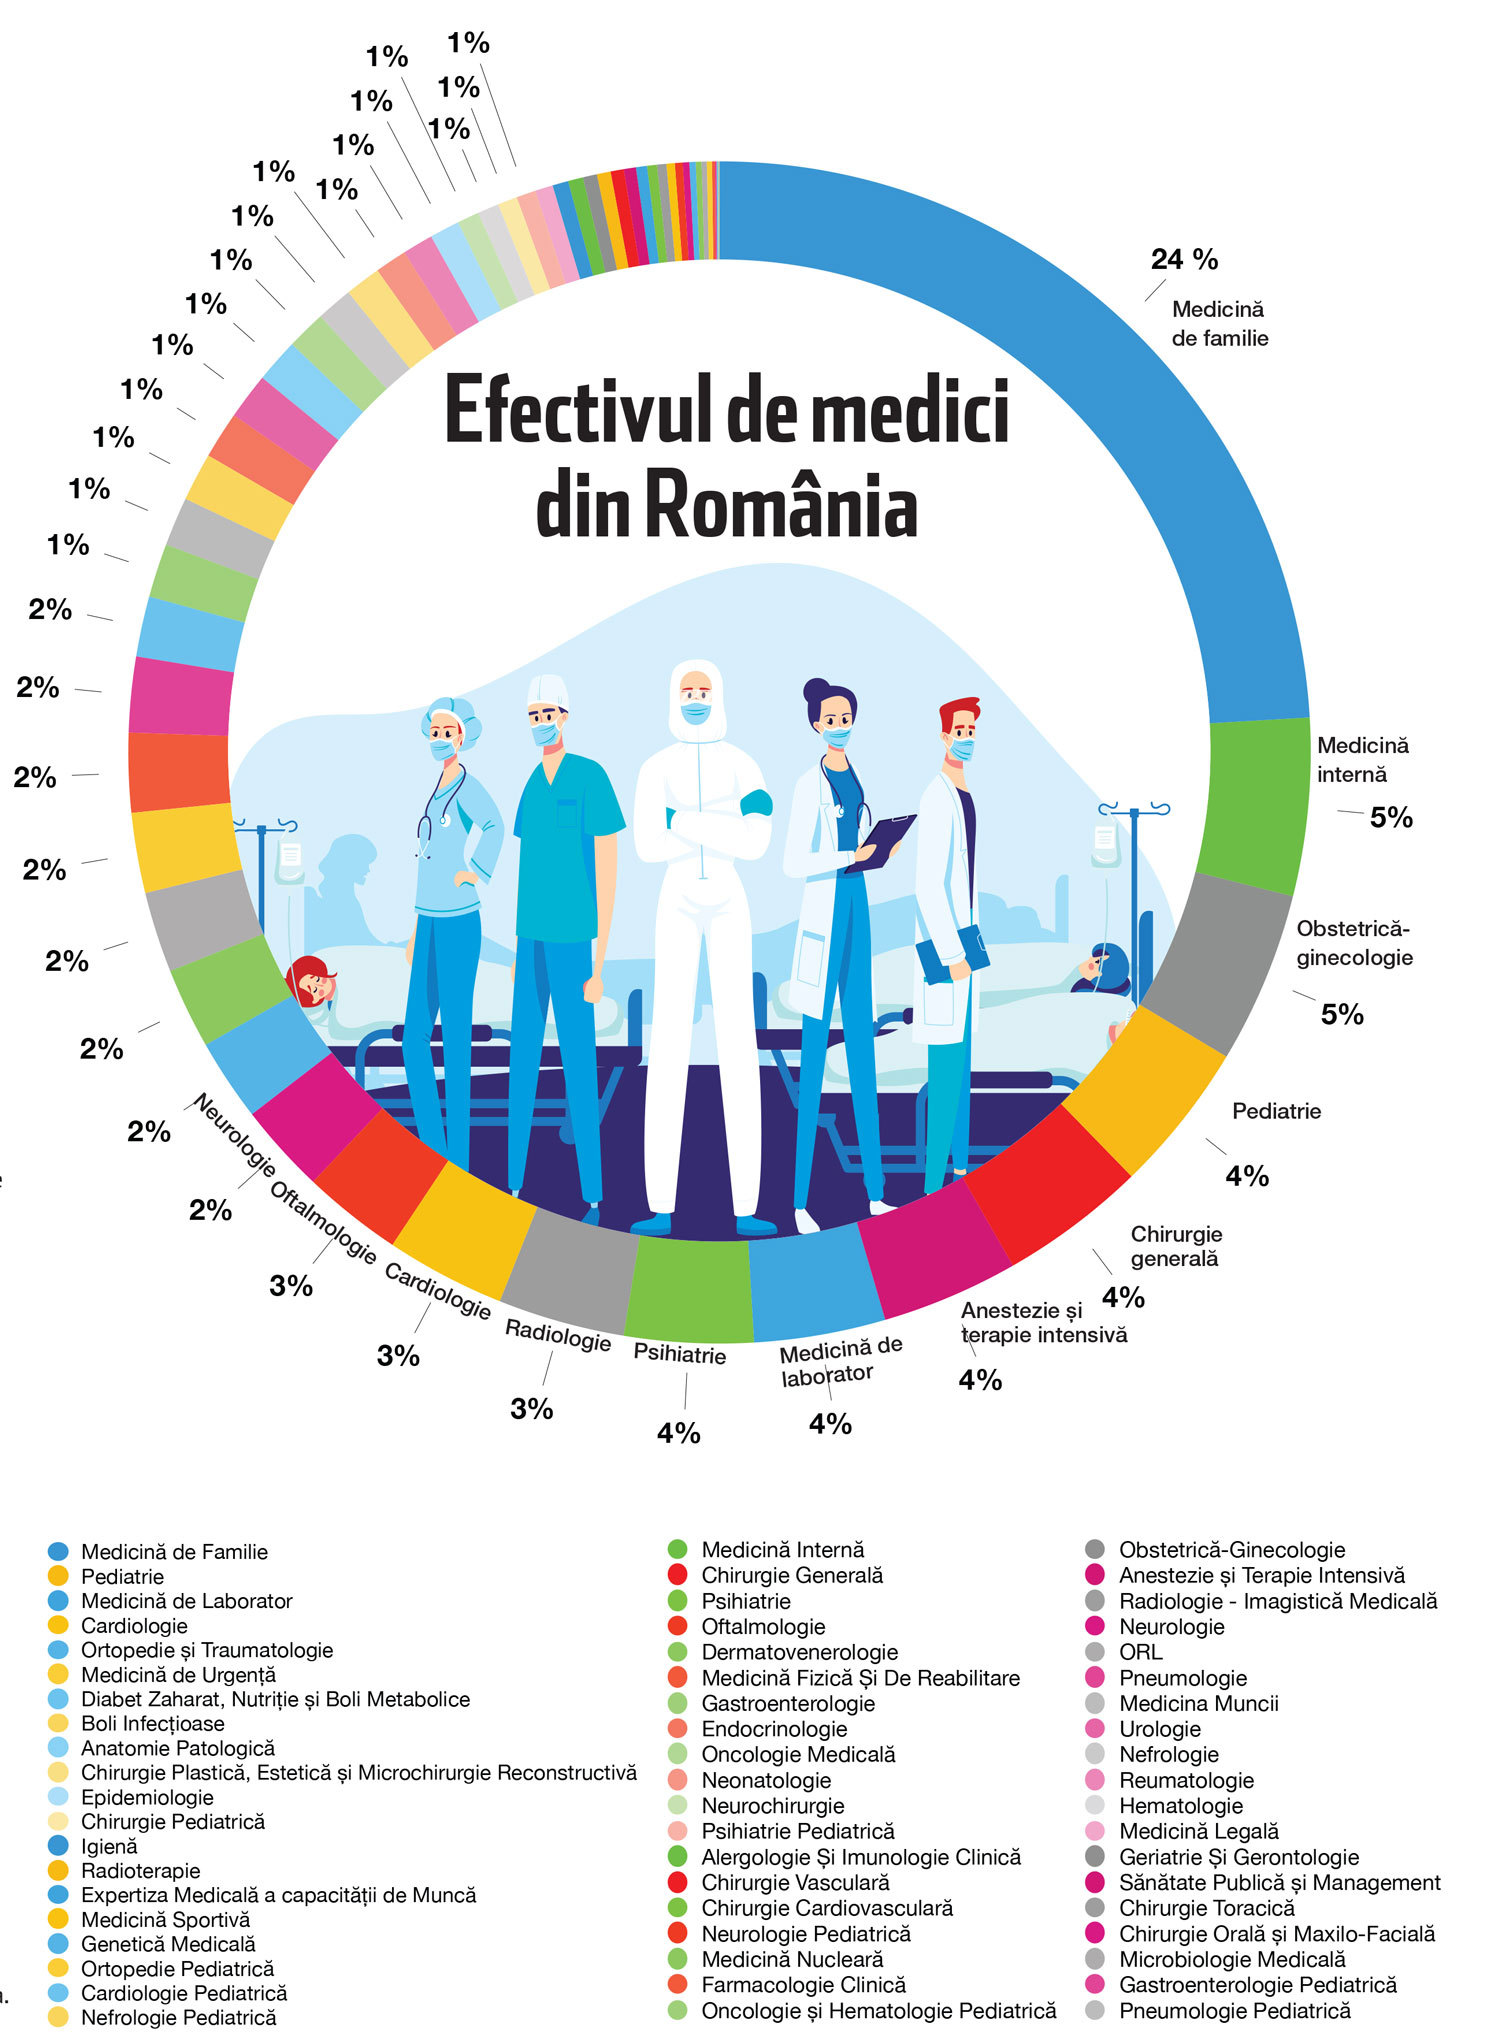 Supliment ZF Medical & Pharma. Resursa umană în sănătate. Cum arată distribuţia medicilor pe specialităţi în România? Medicina de familie, cea mai numeroasă. Deficitul cel mai mare este pe specialităţile de pediatrie